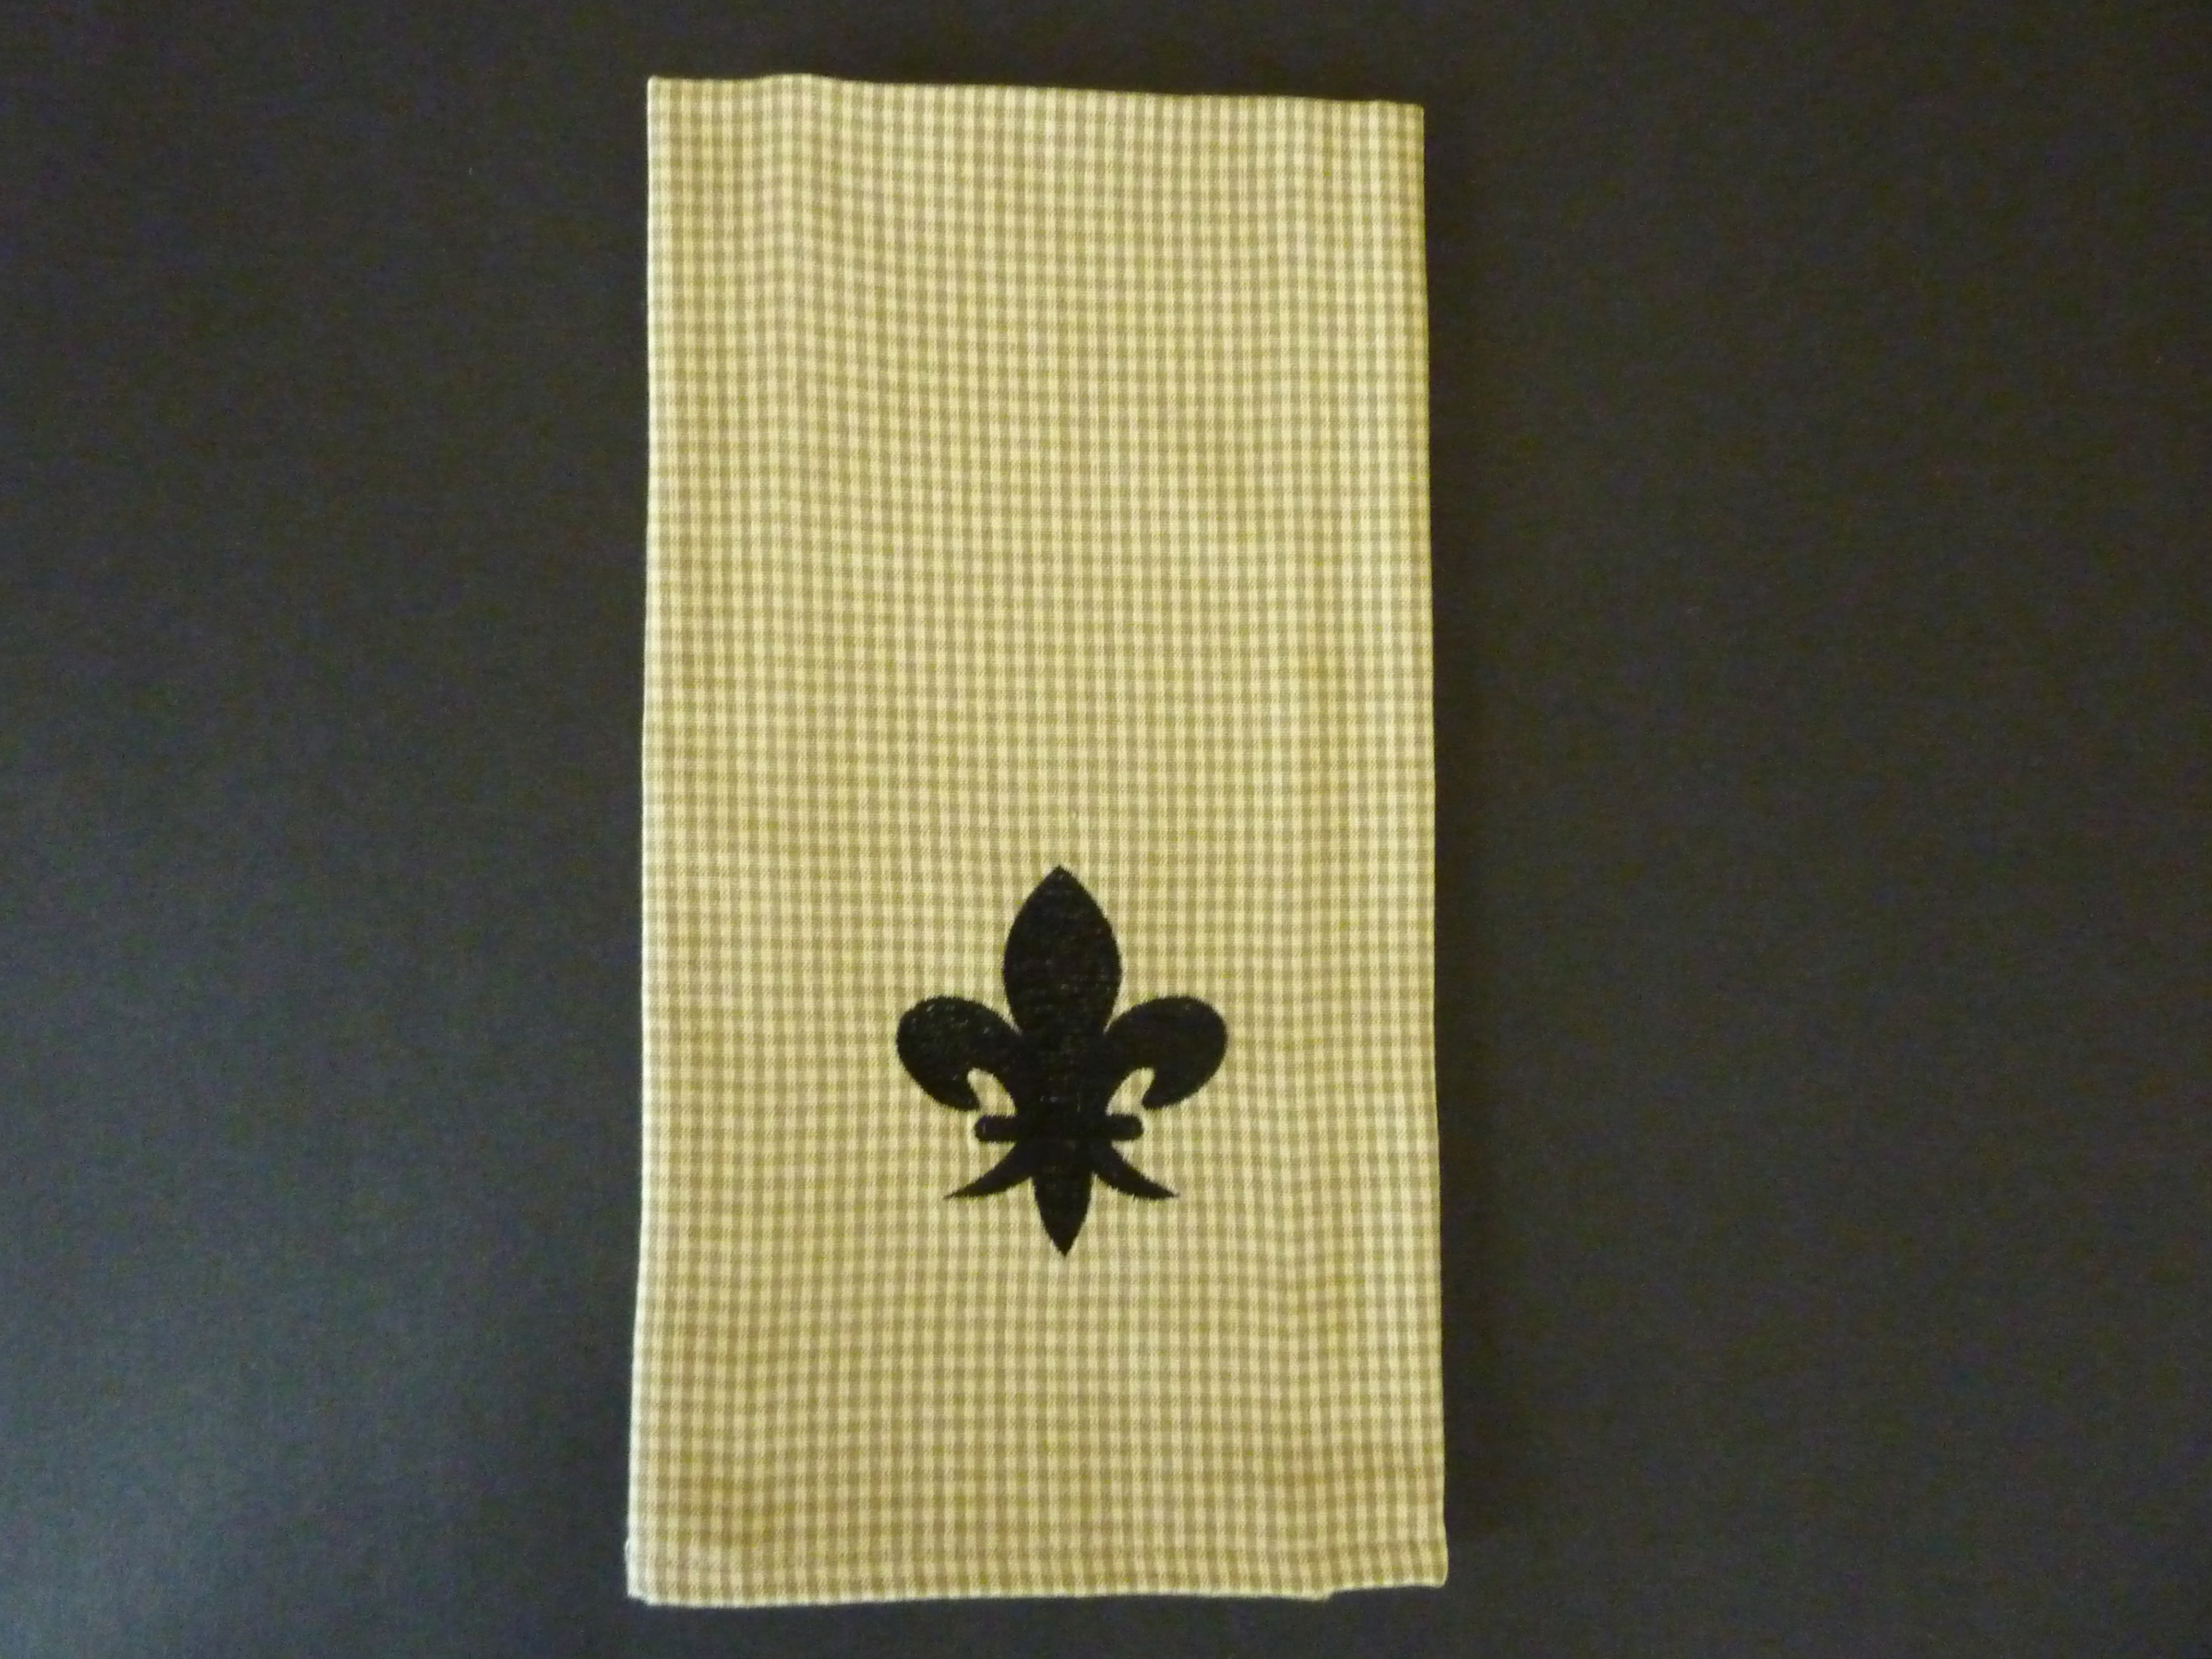 Fleur de lis Christmas Kitchen Towel, Farmhouse Dish Towel